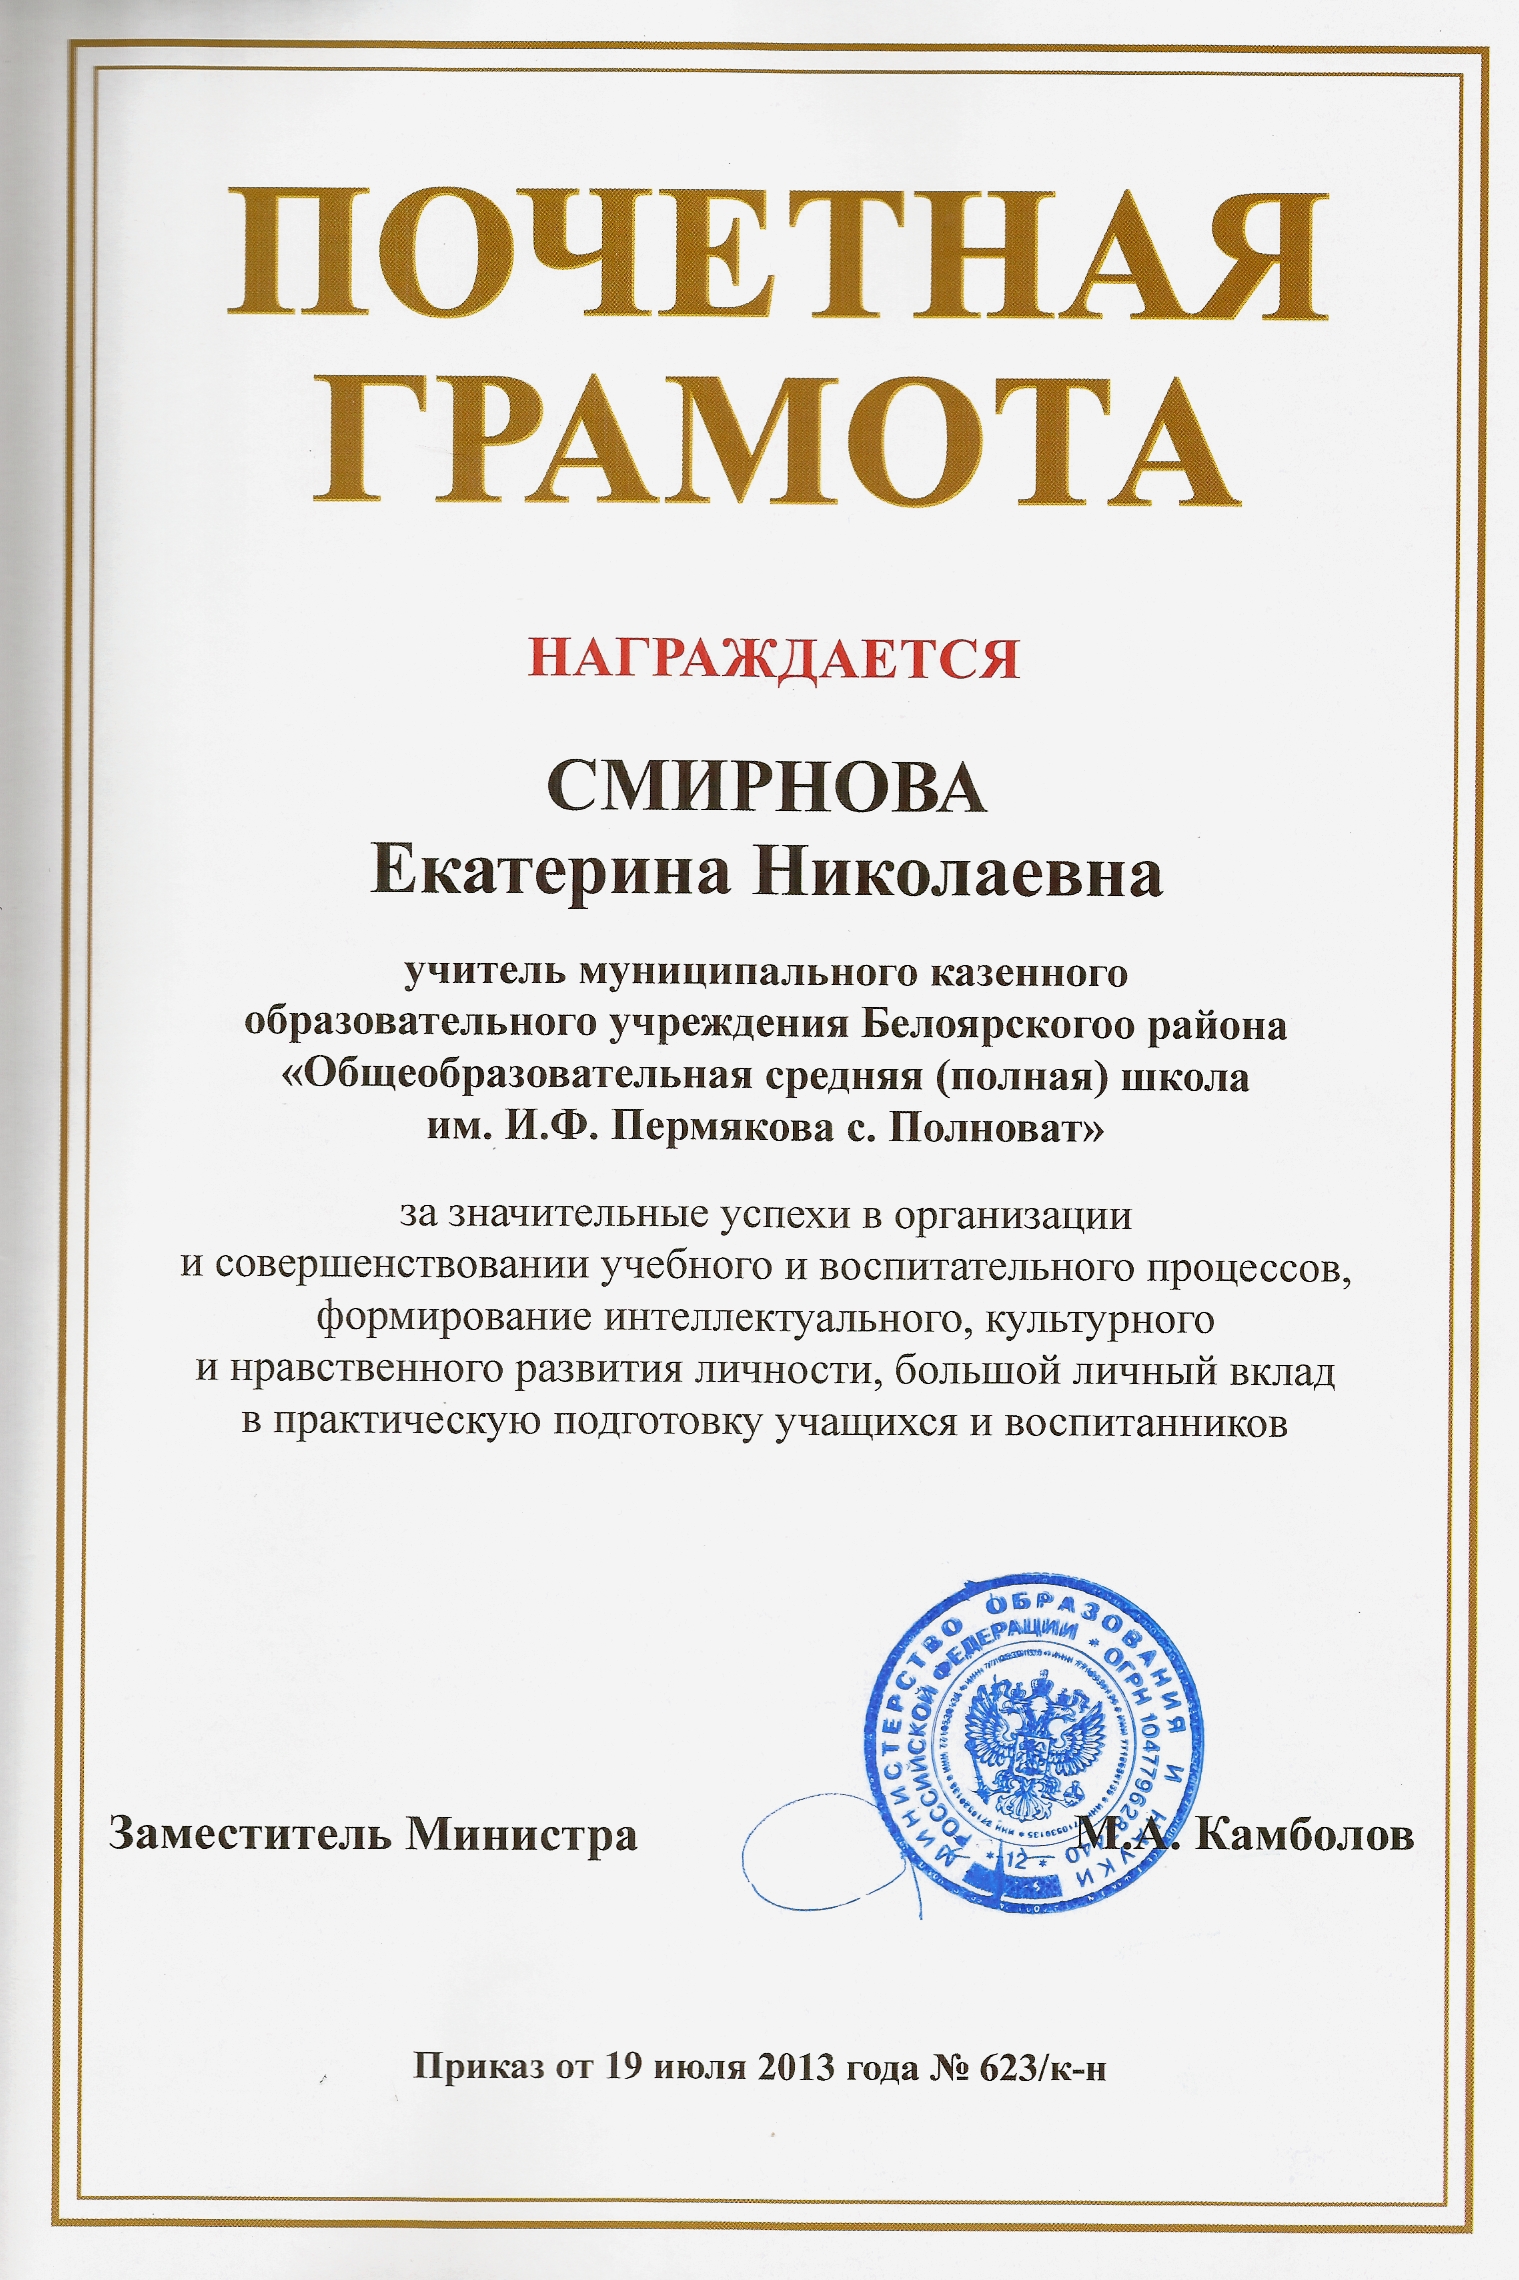 Почётная грамота Министерства образования и науки РФ, 2013